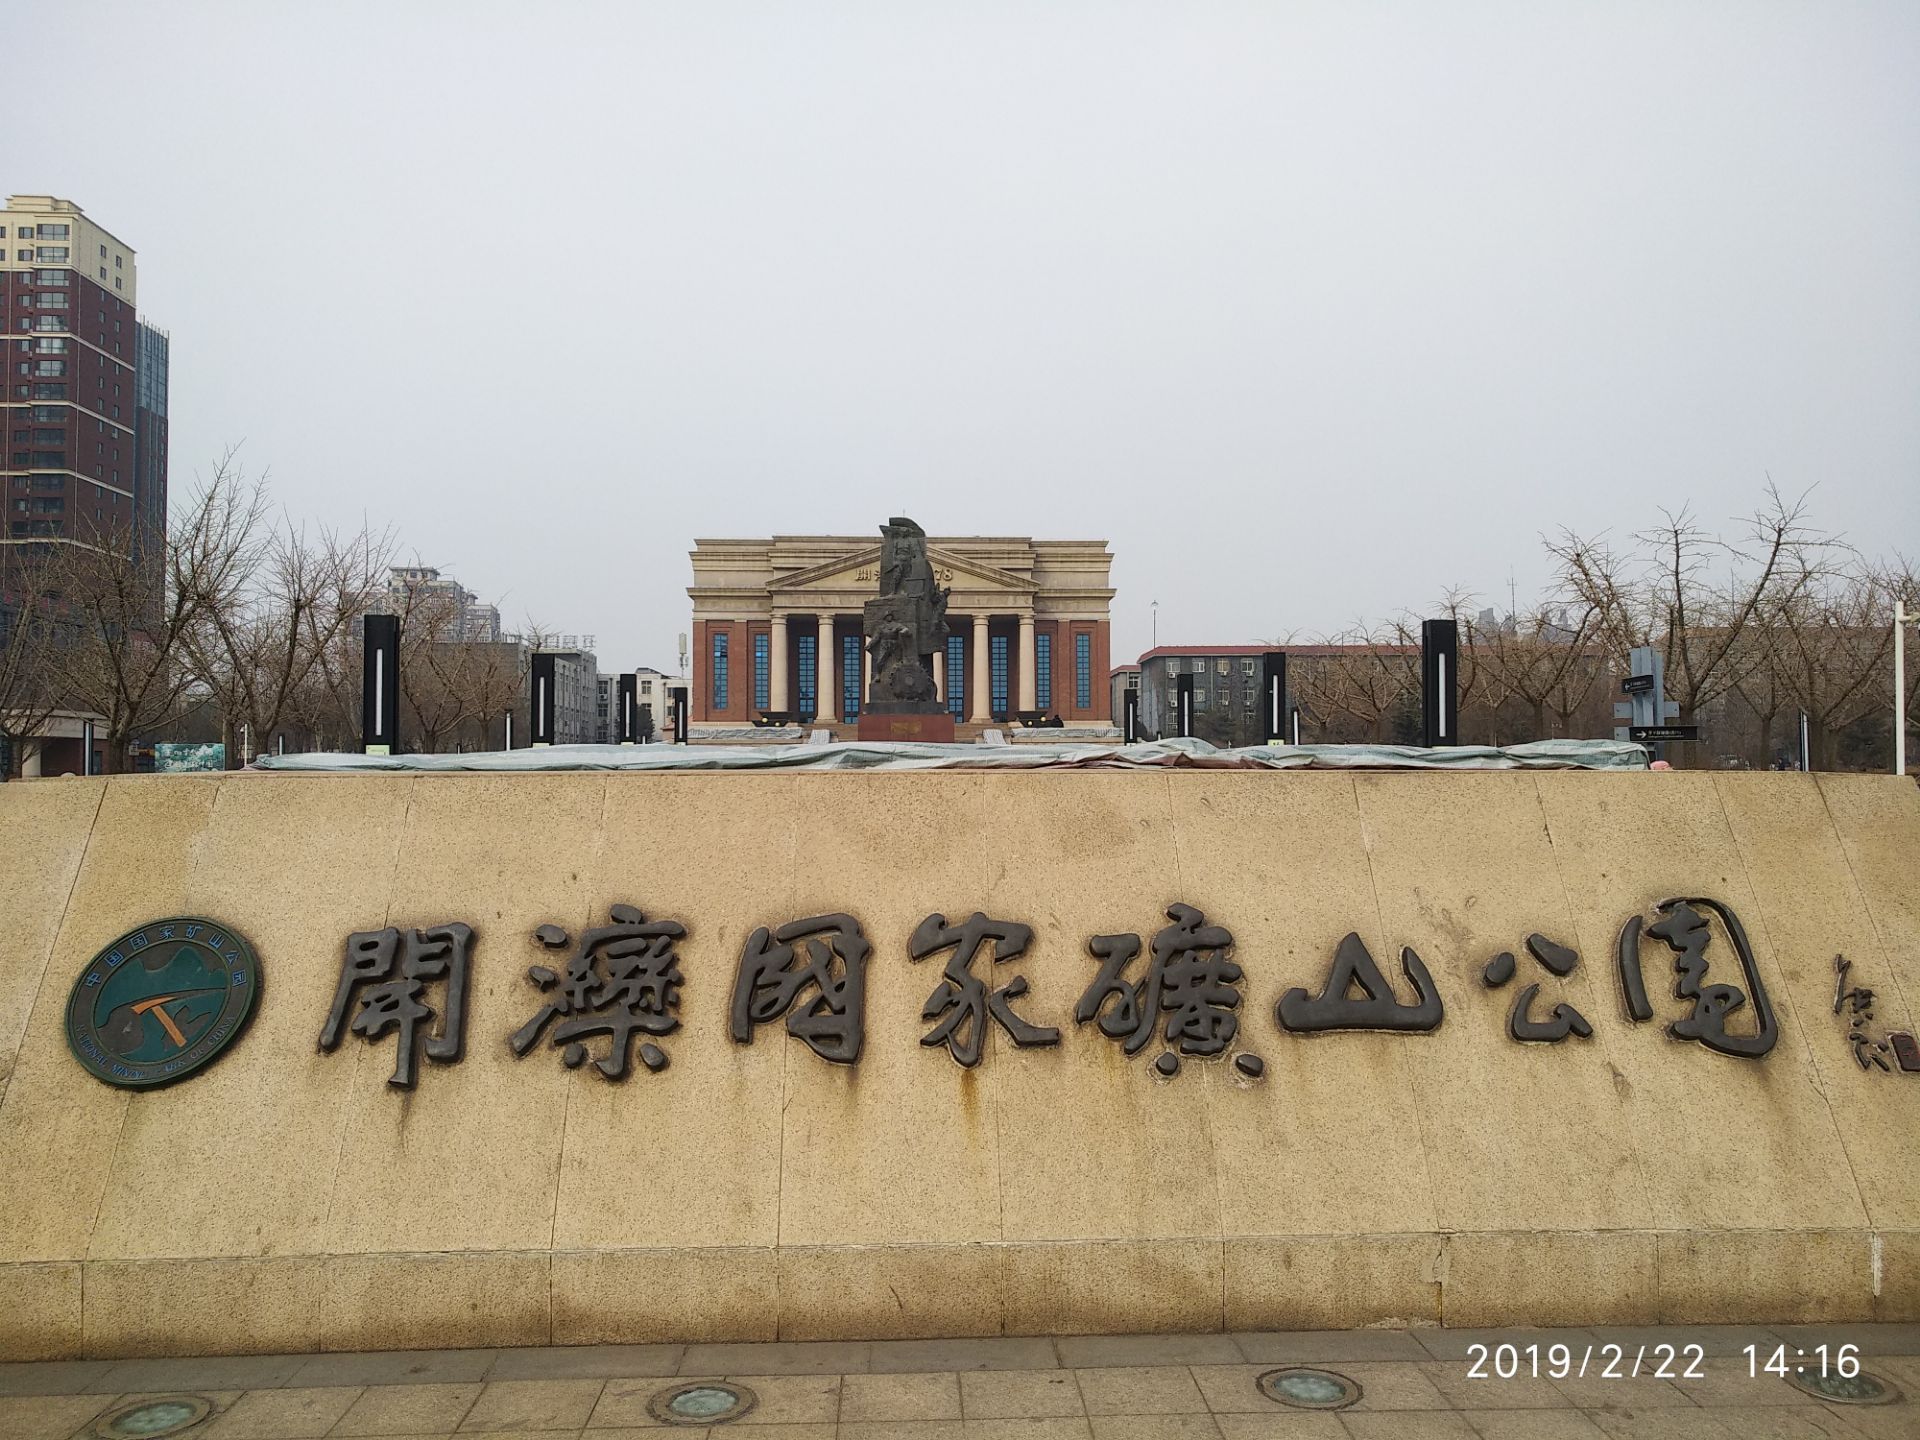 开滦国家矿山公园位于唐山市中心区域,坐落在有着136年开采历史,被誉